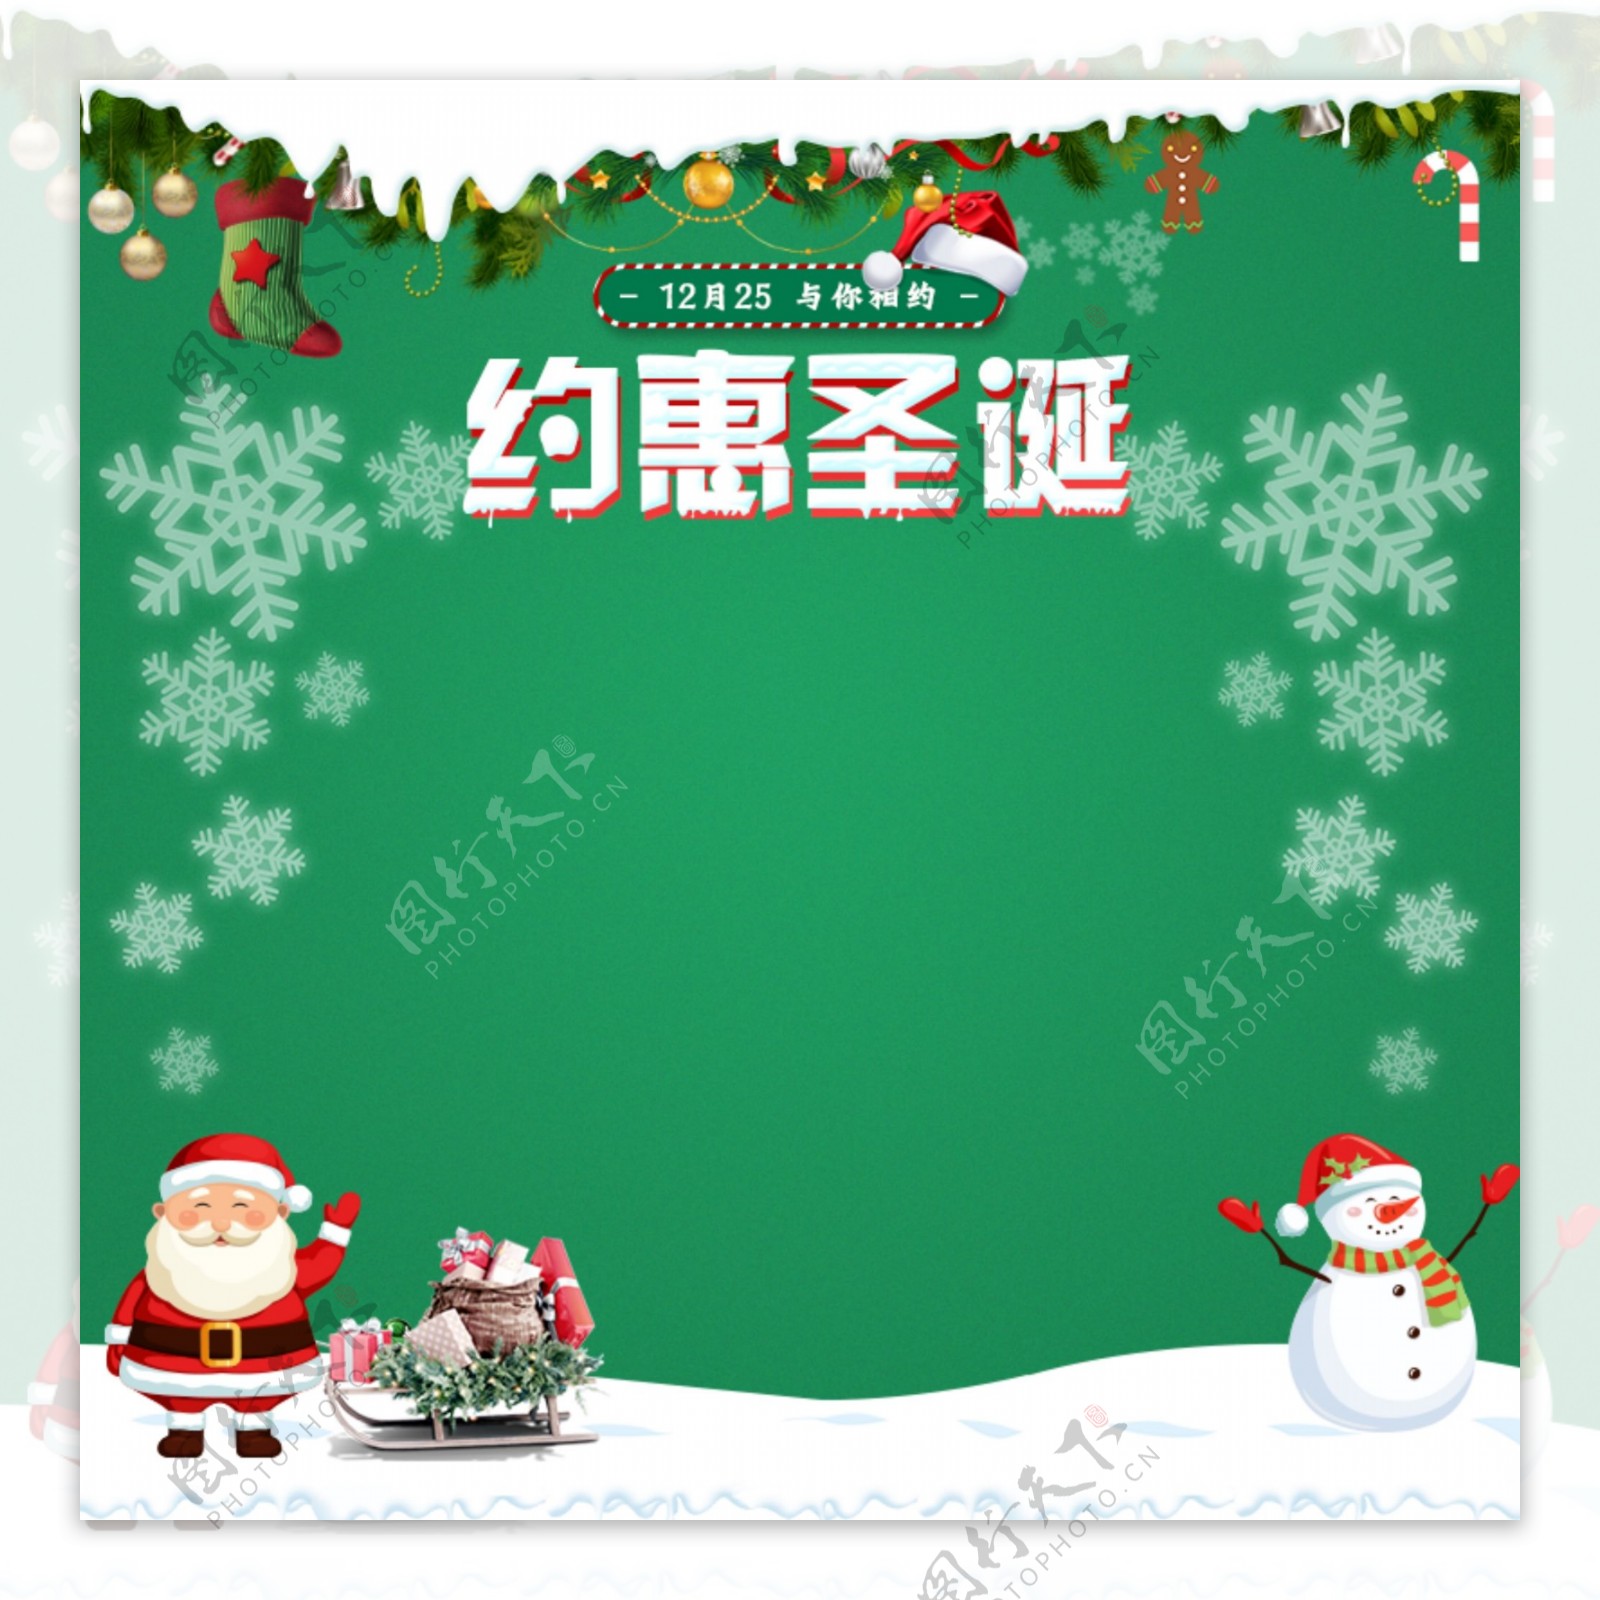 天猫淘宝圣诞节主图促销活动圣诞老人雪